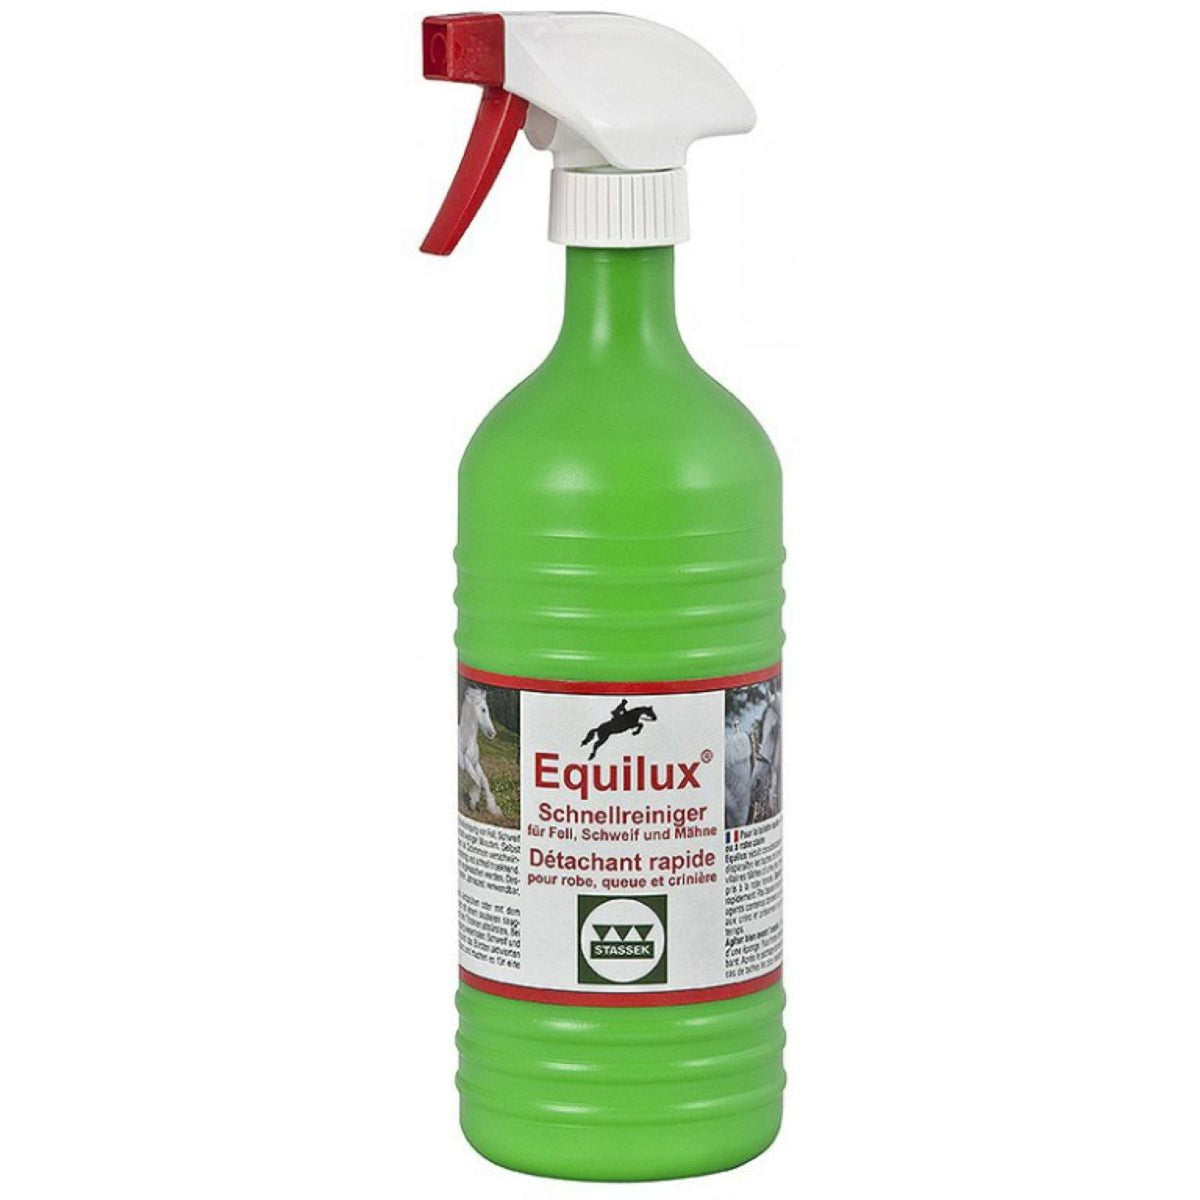 Stassek Schnellreiniger Equilux Spray